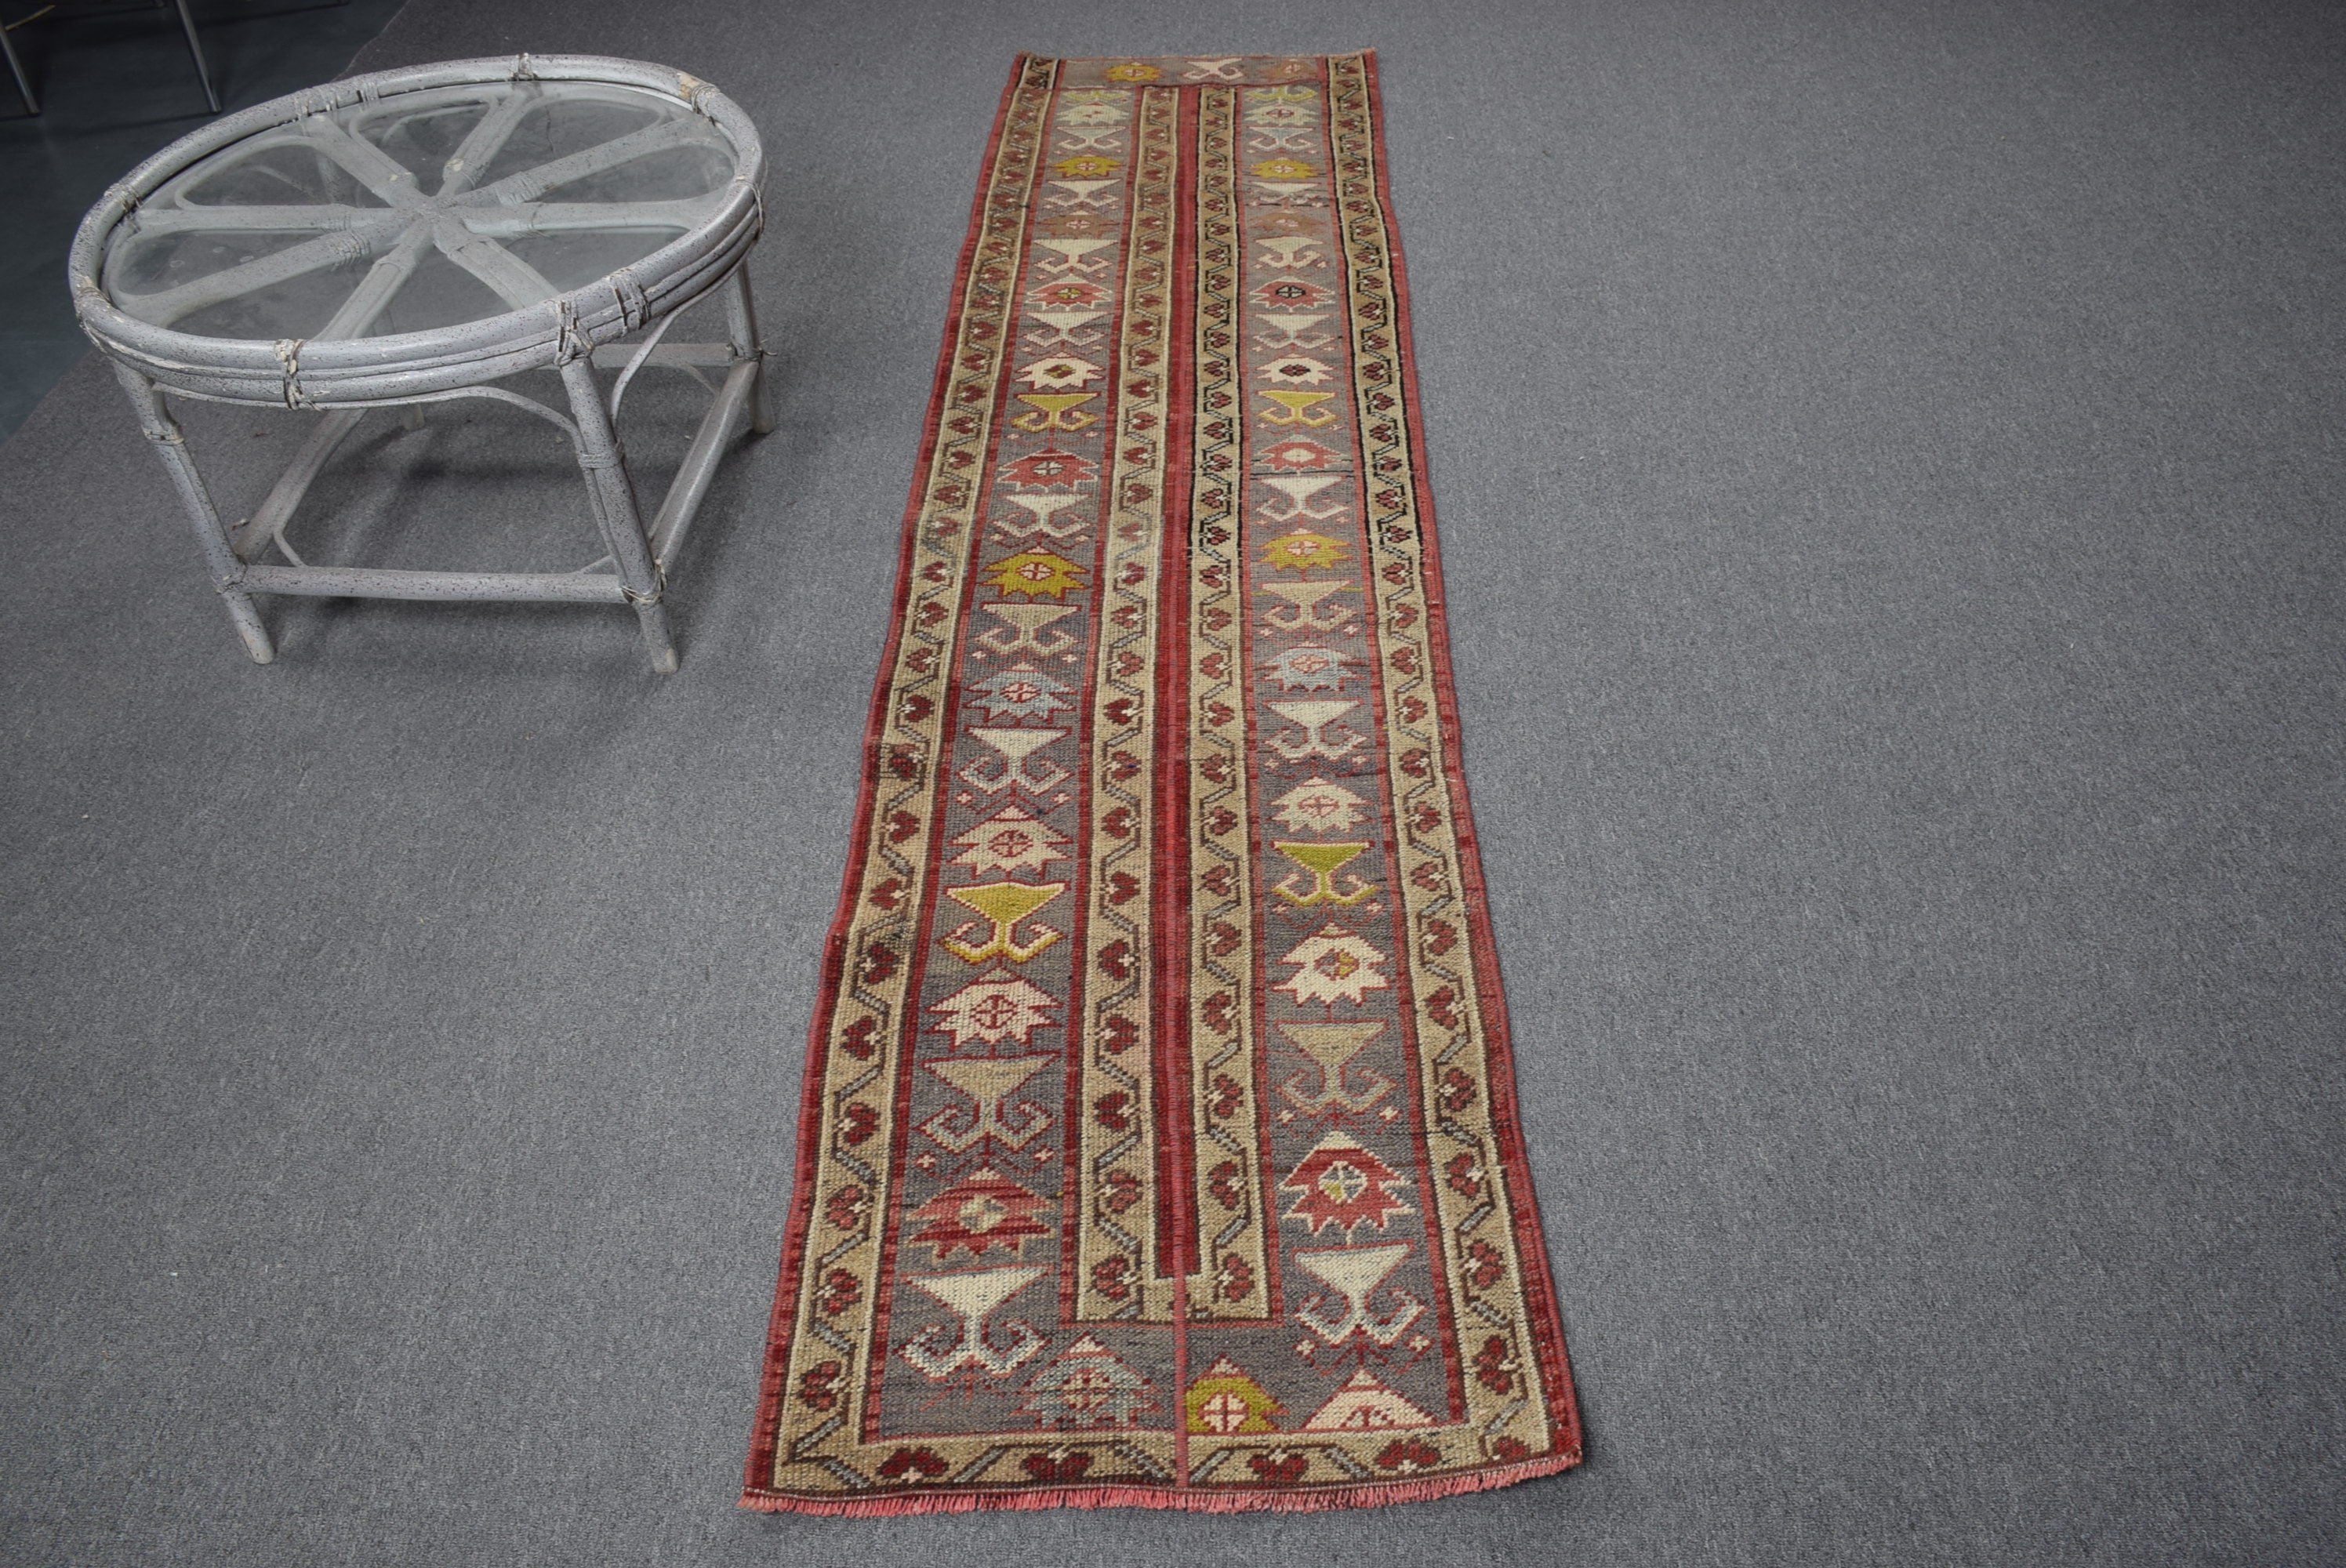 Vintage Rug, Kitchen Rug, Red  2x8.2 ft Runner Rugs, Rugs for Runner, Turkish Rugs, Cool Rug, Corridor Rug, Hallway Rug